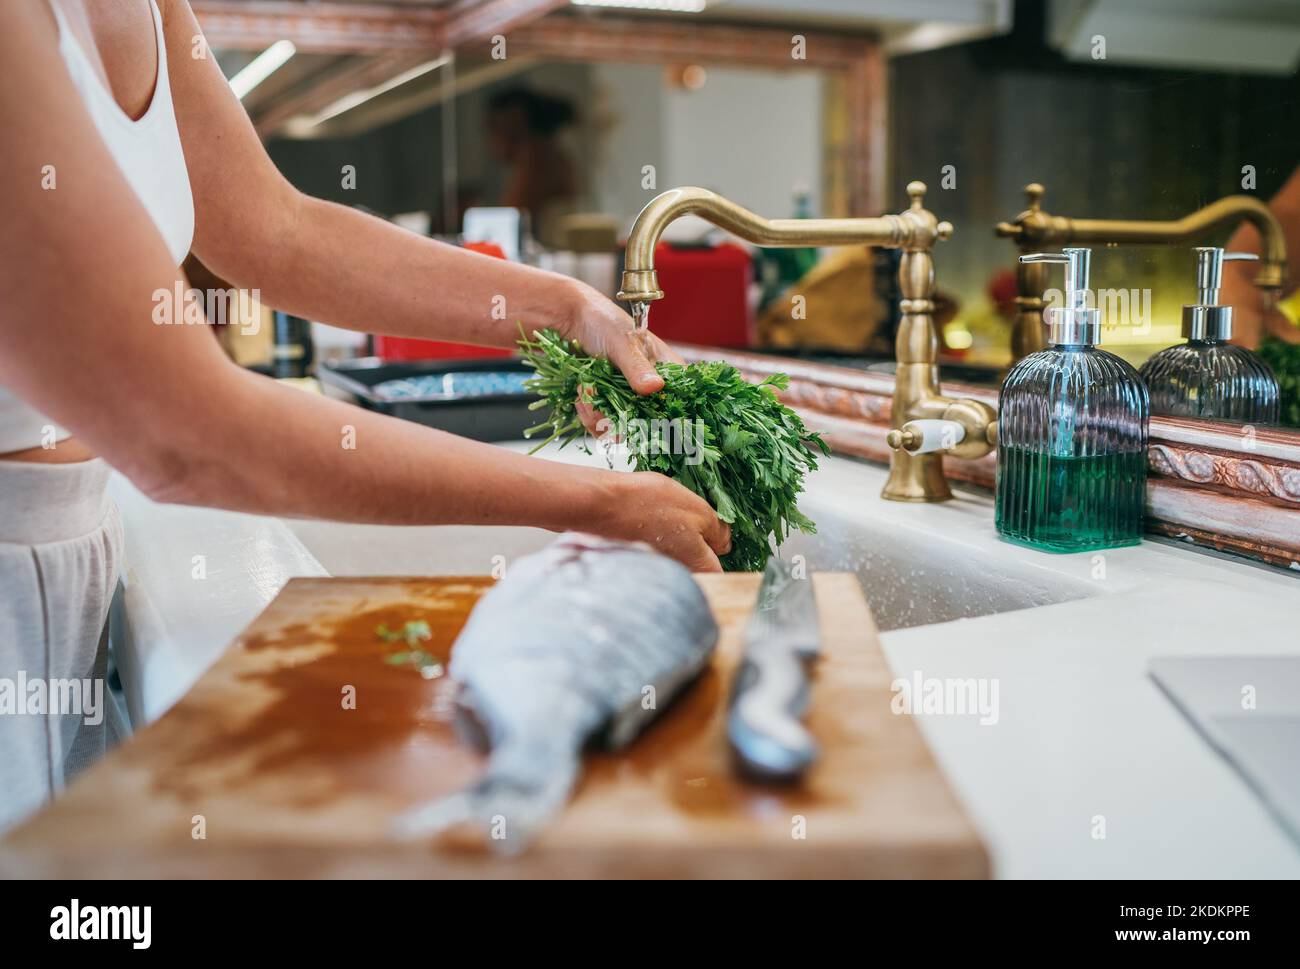 Waschen der frischen grünen Petersilie Kraut unter dem Spülbecken Wasserhahn und Fisch auf Schneidebrett Vorbereitung zum Kochen. Gesunde Lebensmittel und frische Meeresfrüchte Stockfoto